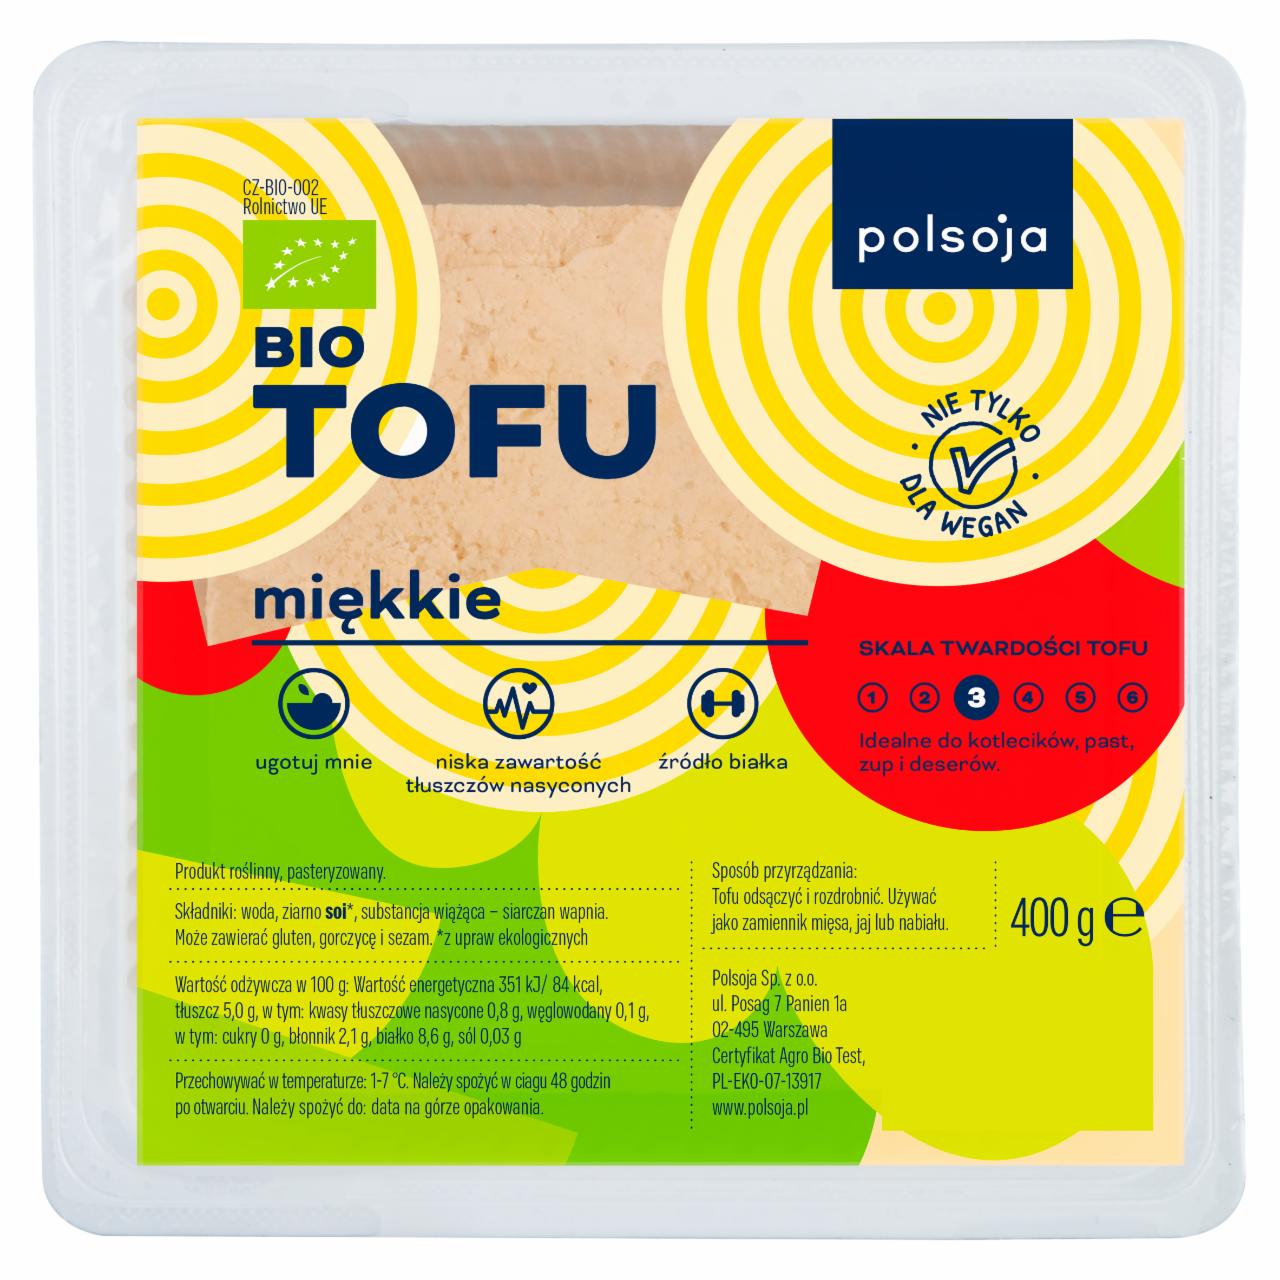 Zdjęcia - Polsoja Bio tofu miękkie 400 g